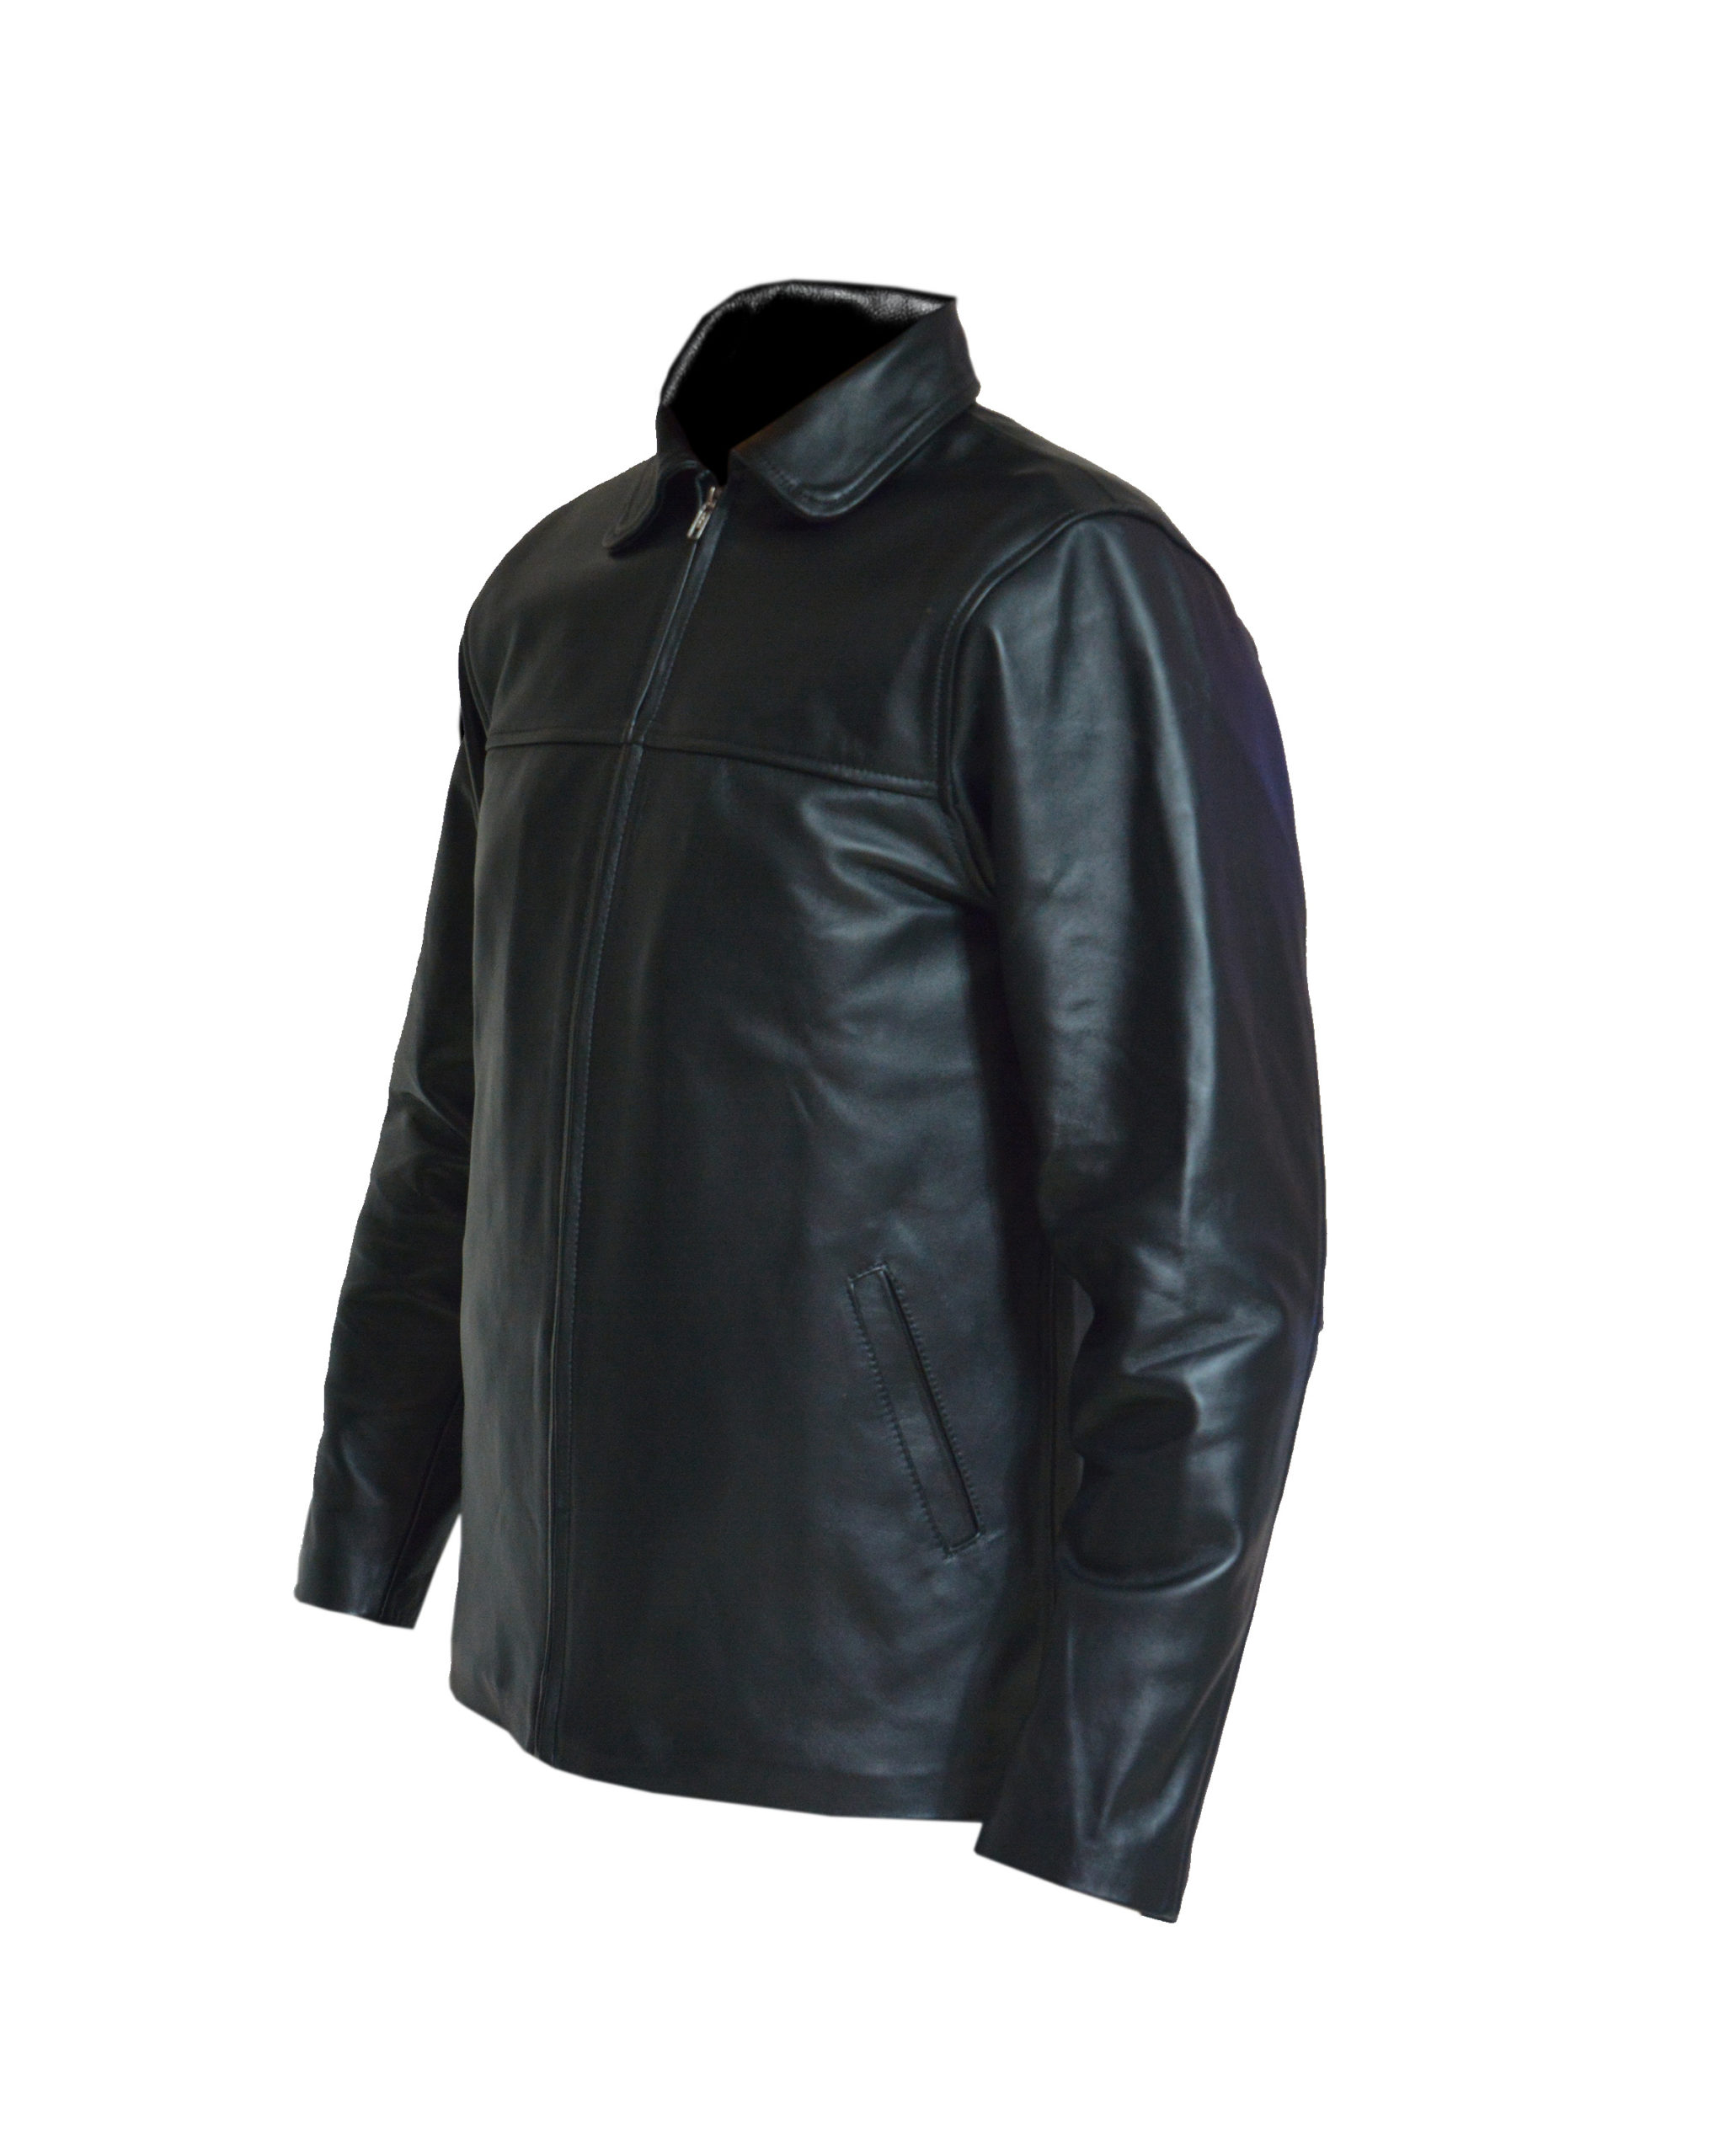 Chamarra Cuero Hombre mod.ZTR – Chamarras Piel Leather outfit